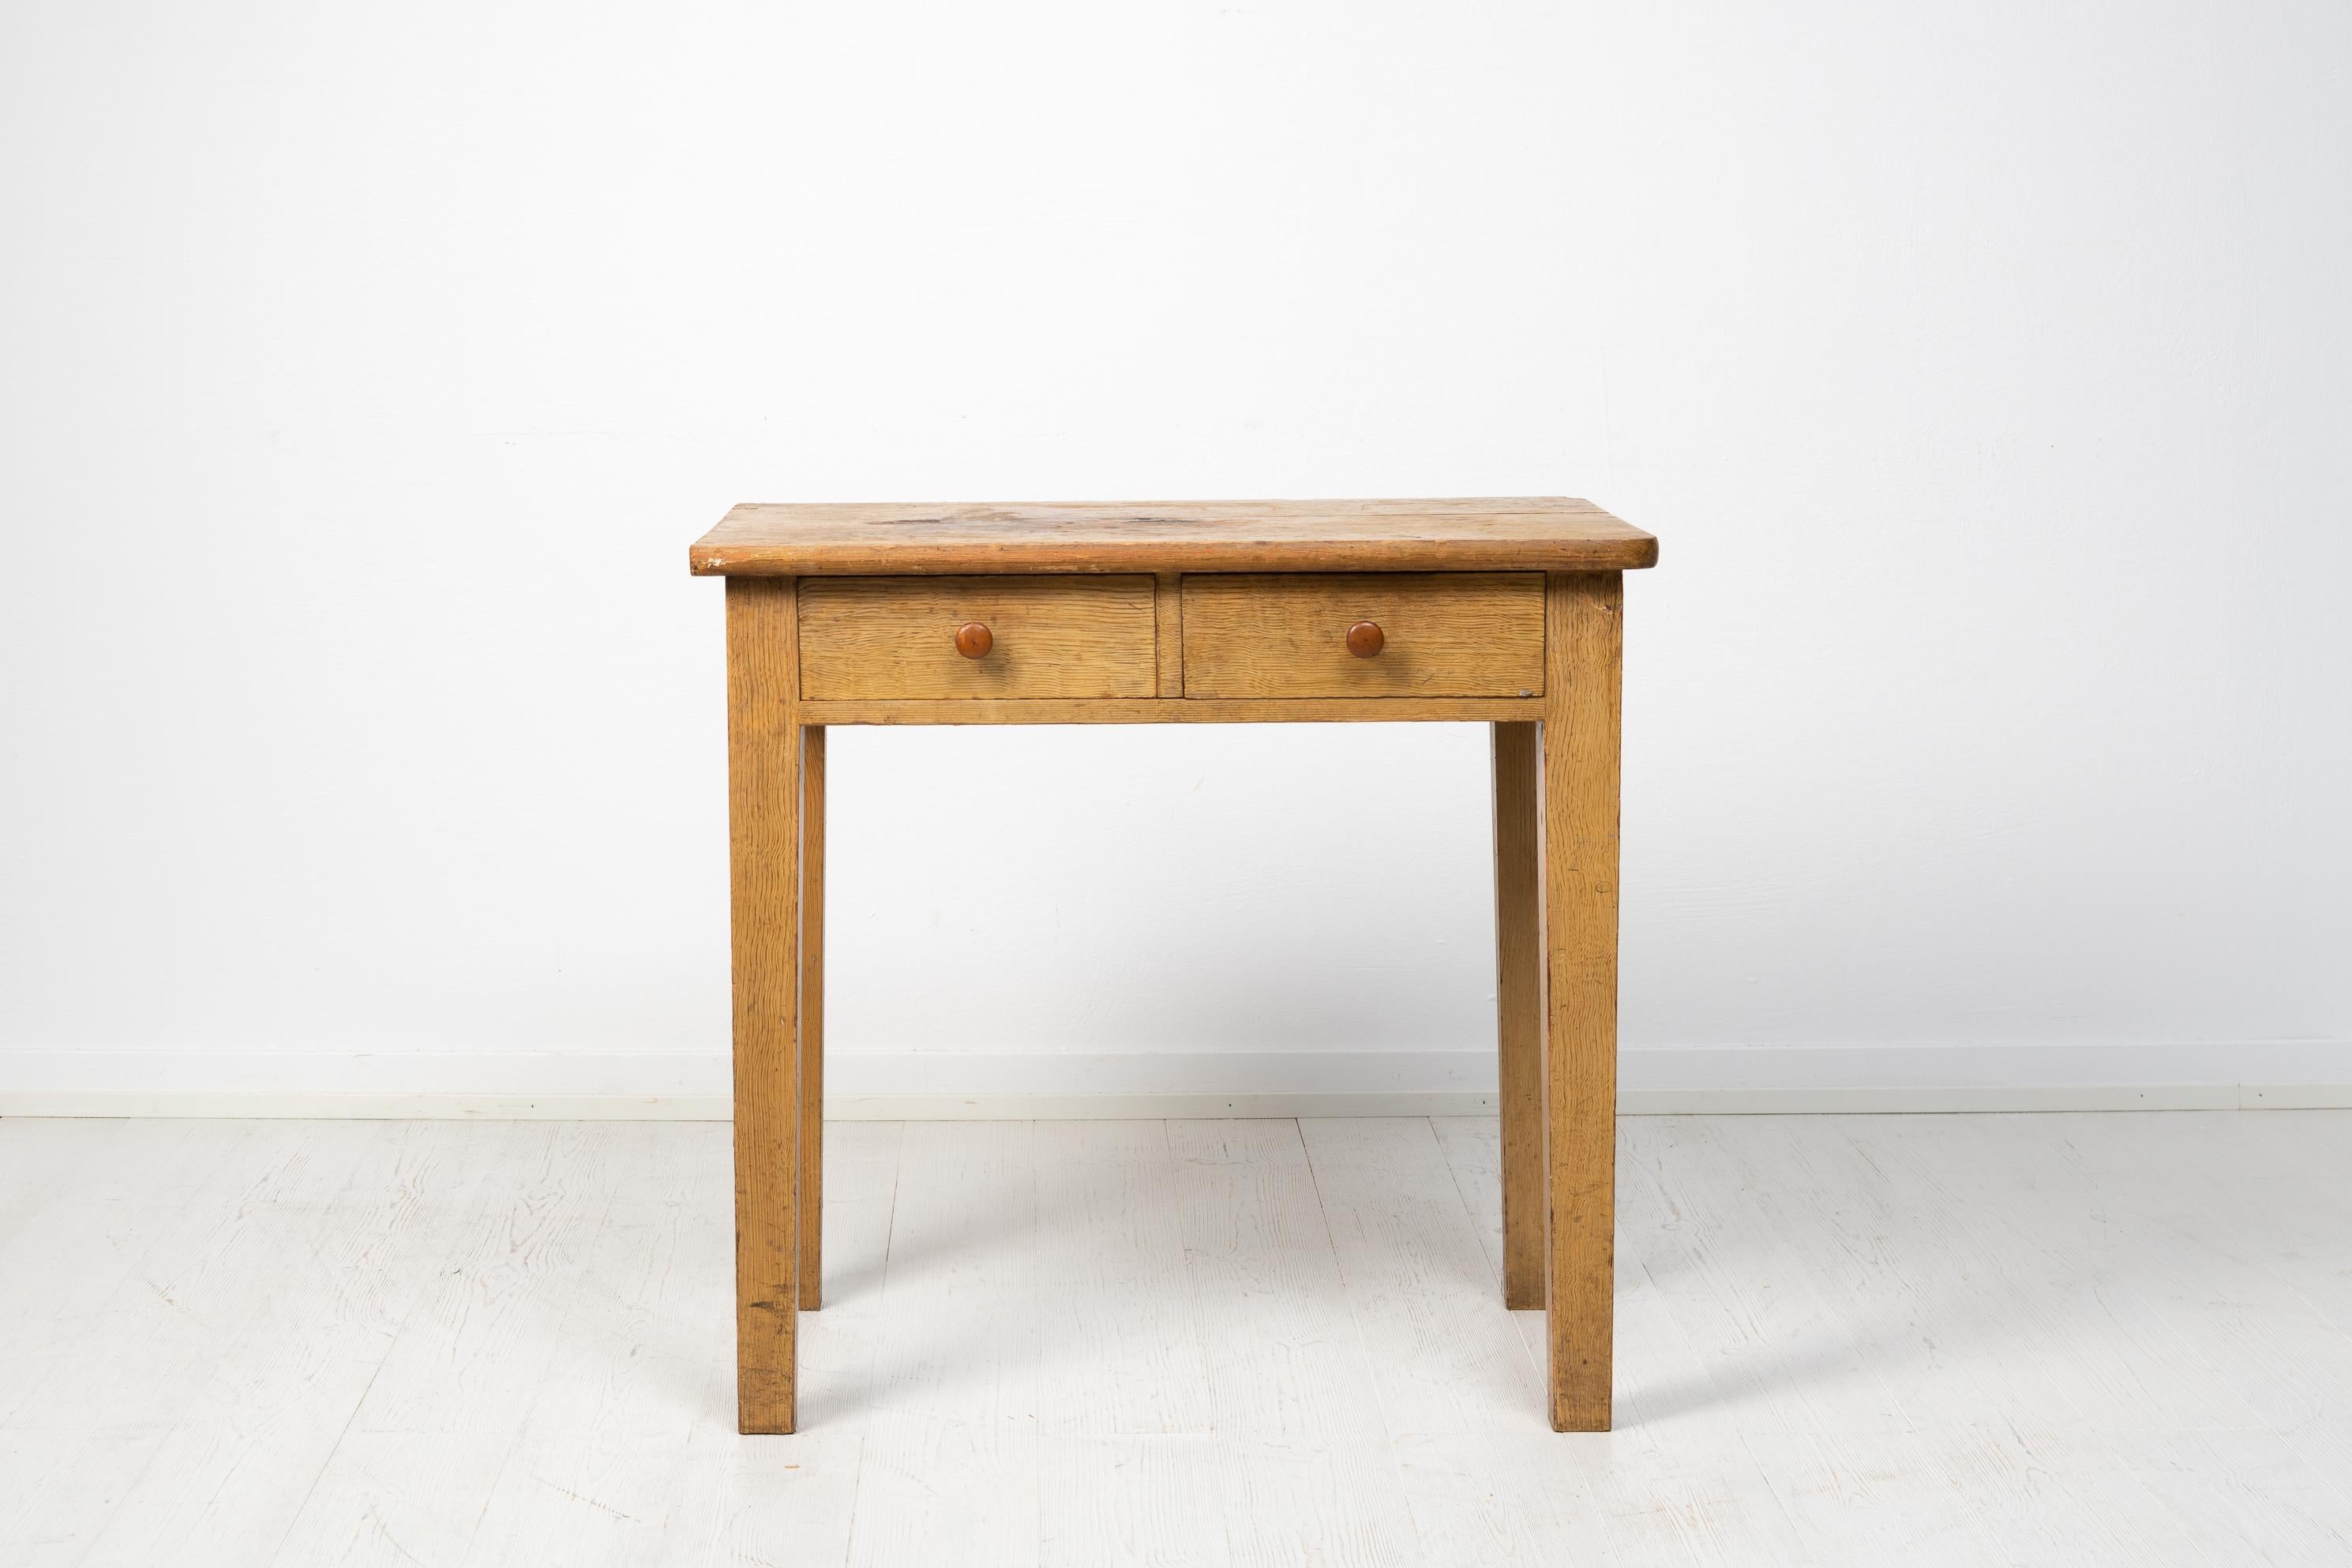 Table d'art populaire suédois primitif fabriquée au début des années 1800. La table a une construction simple avec un cadre solide, des pieds droits et des tiroirs simples. La peinture est originale et une fausse peinture qui imite le bouleau.

La